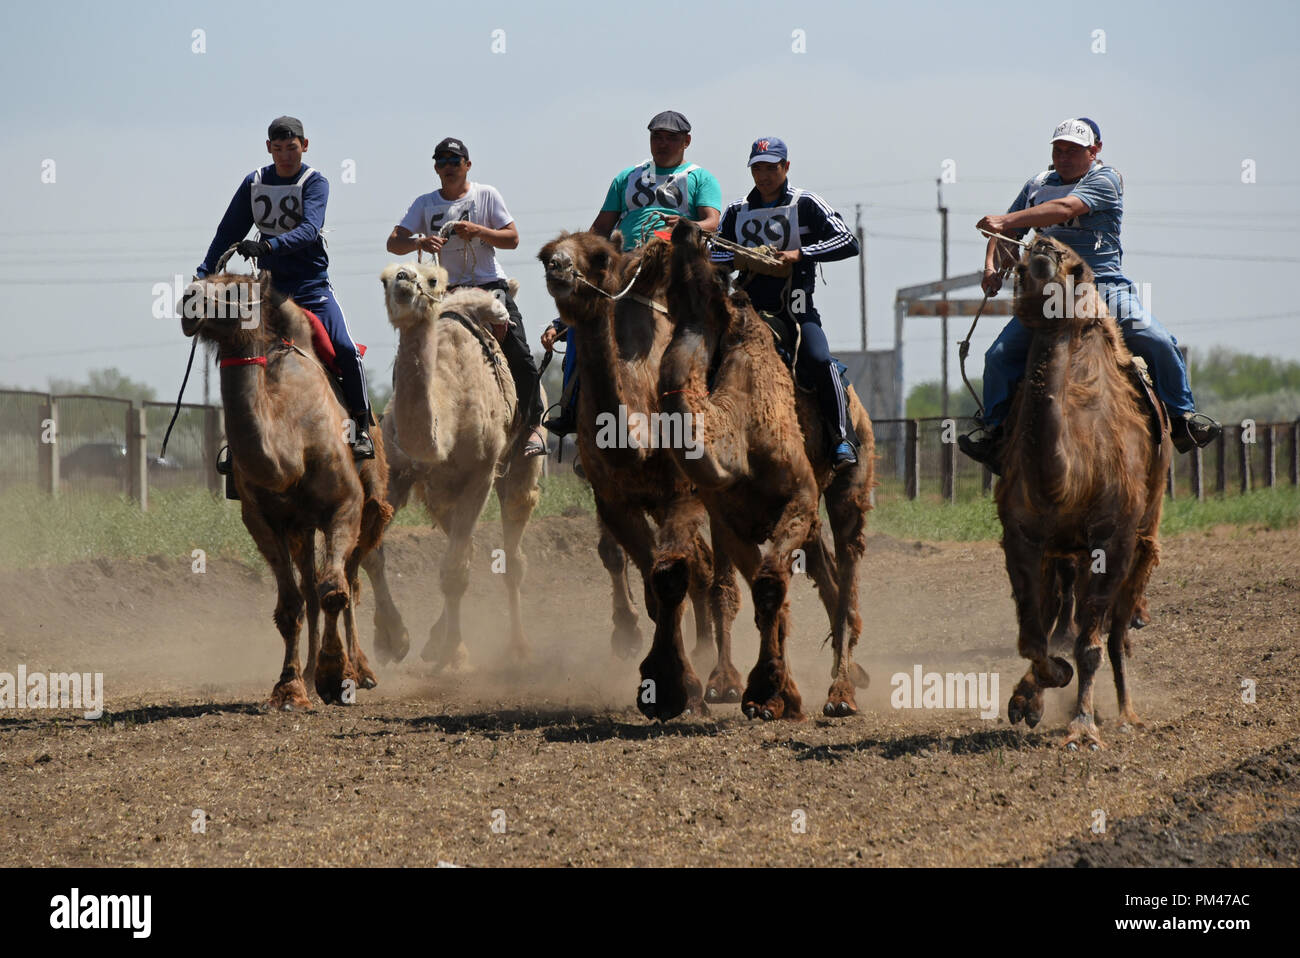 Chameau de Bactriane racing en région d'Astrakhan, Russie. Les agriculteurs faire du chameau de Bactriane à deux bosses au cours de courses en région d'Astrakhan de la Russie. Banque D'Images